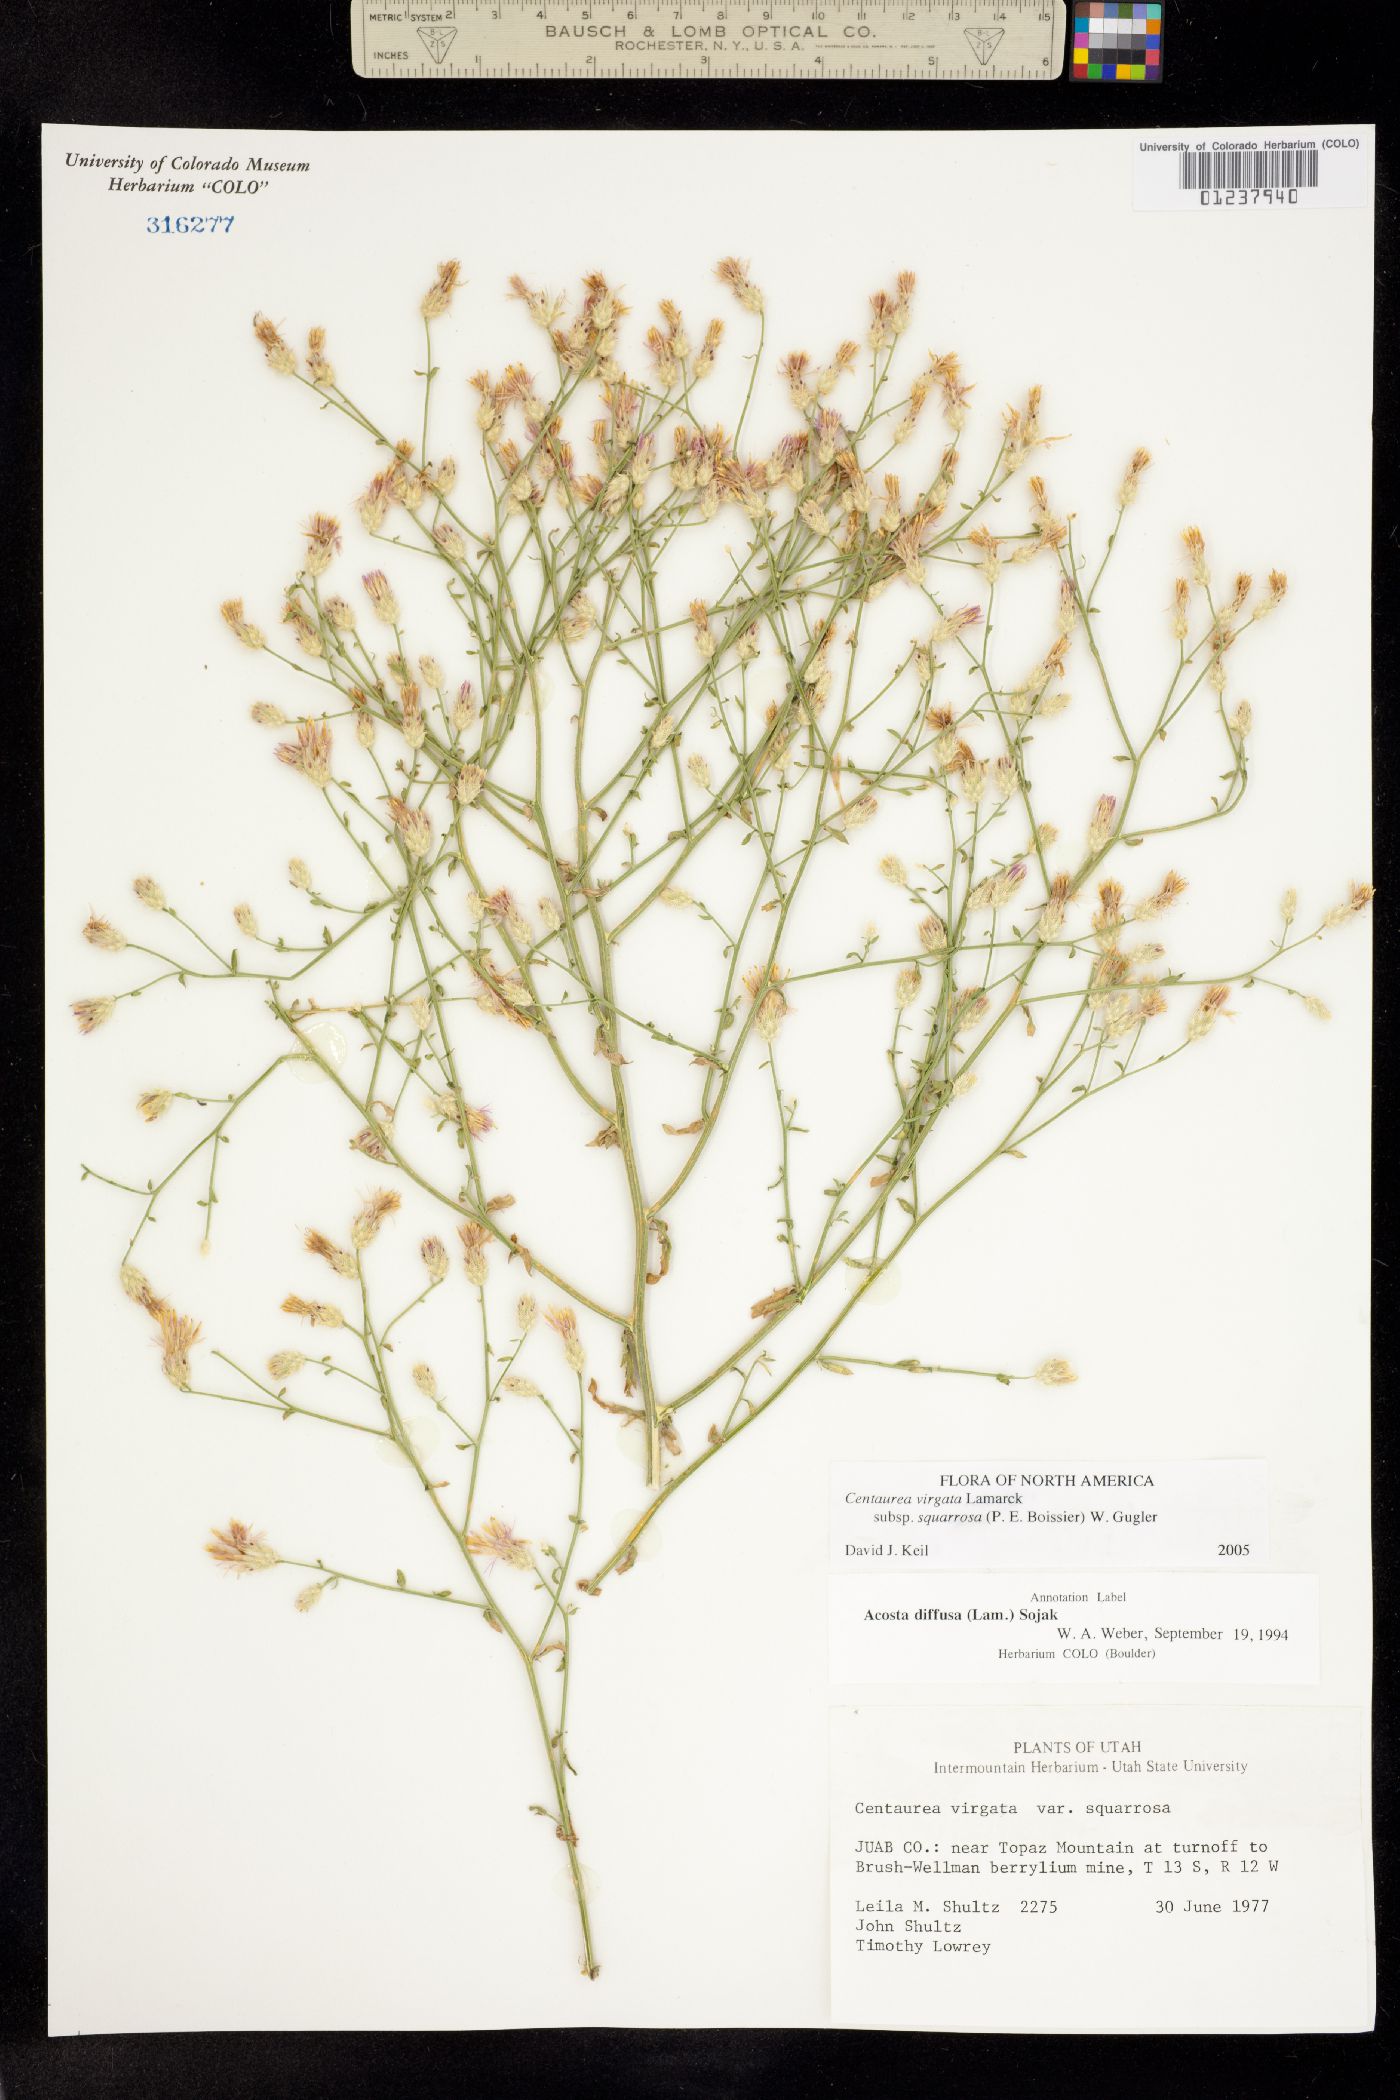 Centaurea virgata ssp. squarrosa image